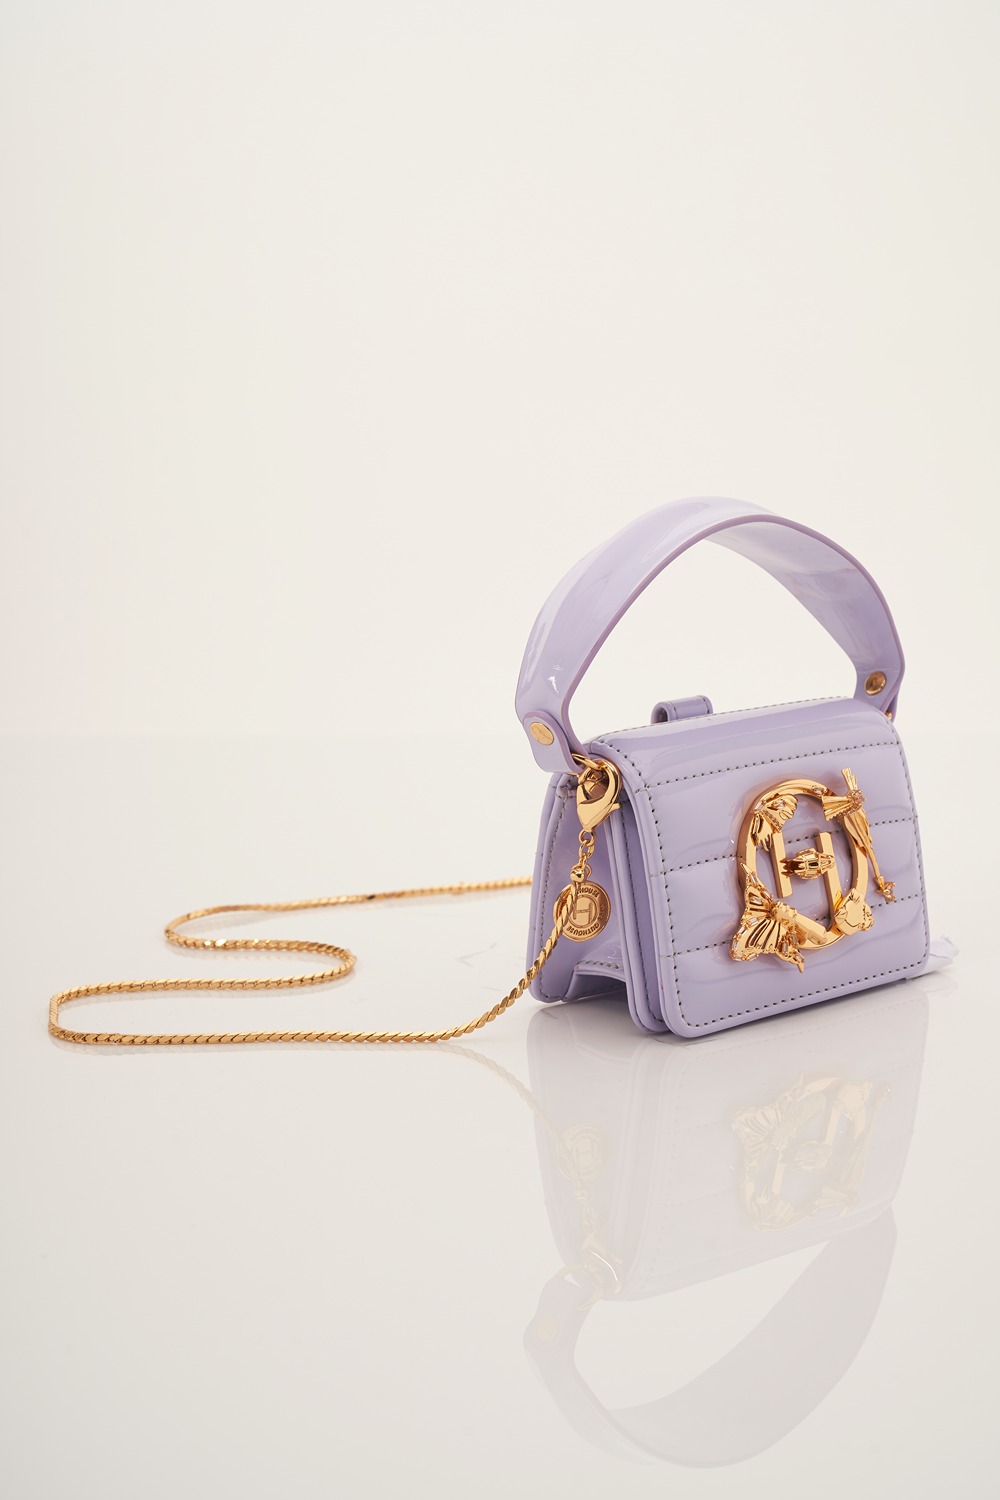 OH V Furbie Bag in Lavender